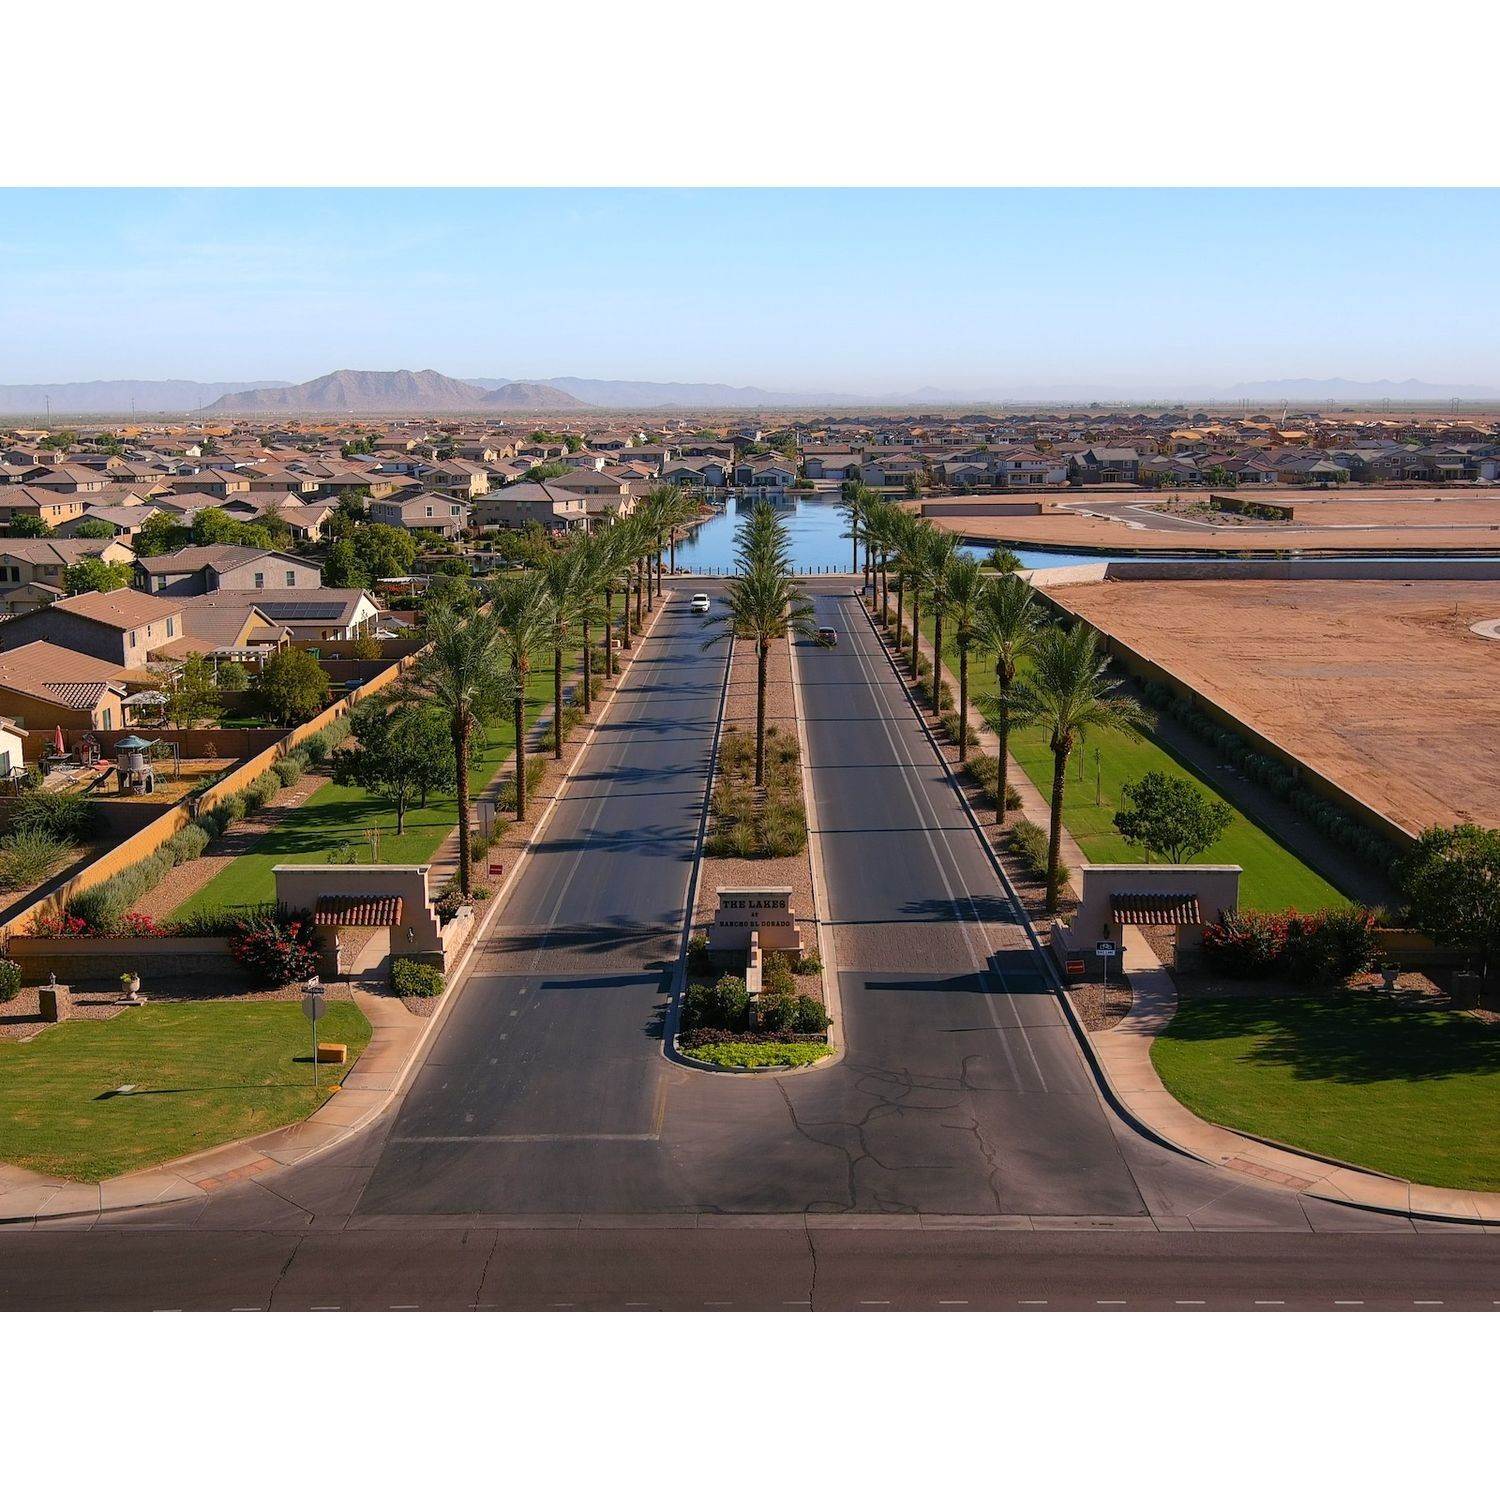 24. Villas at The Lakes at Rancho El Dorado Gebäude bei 21780 N Lynn Street, Maricopa, AZ 85138